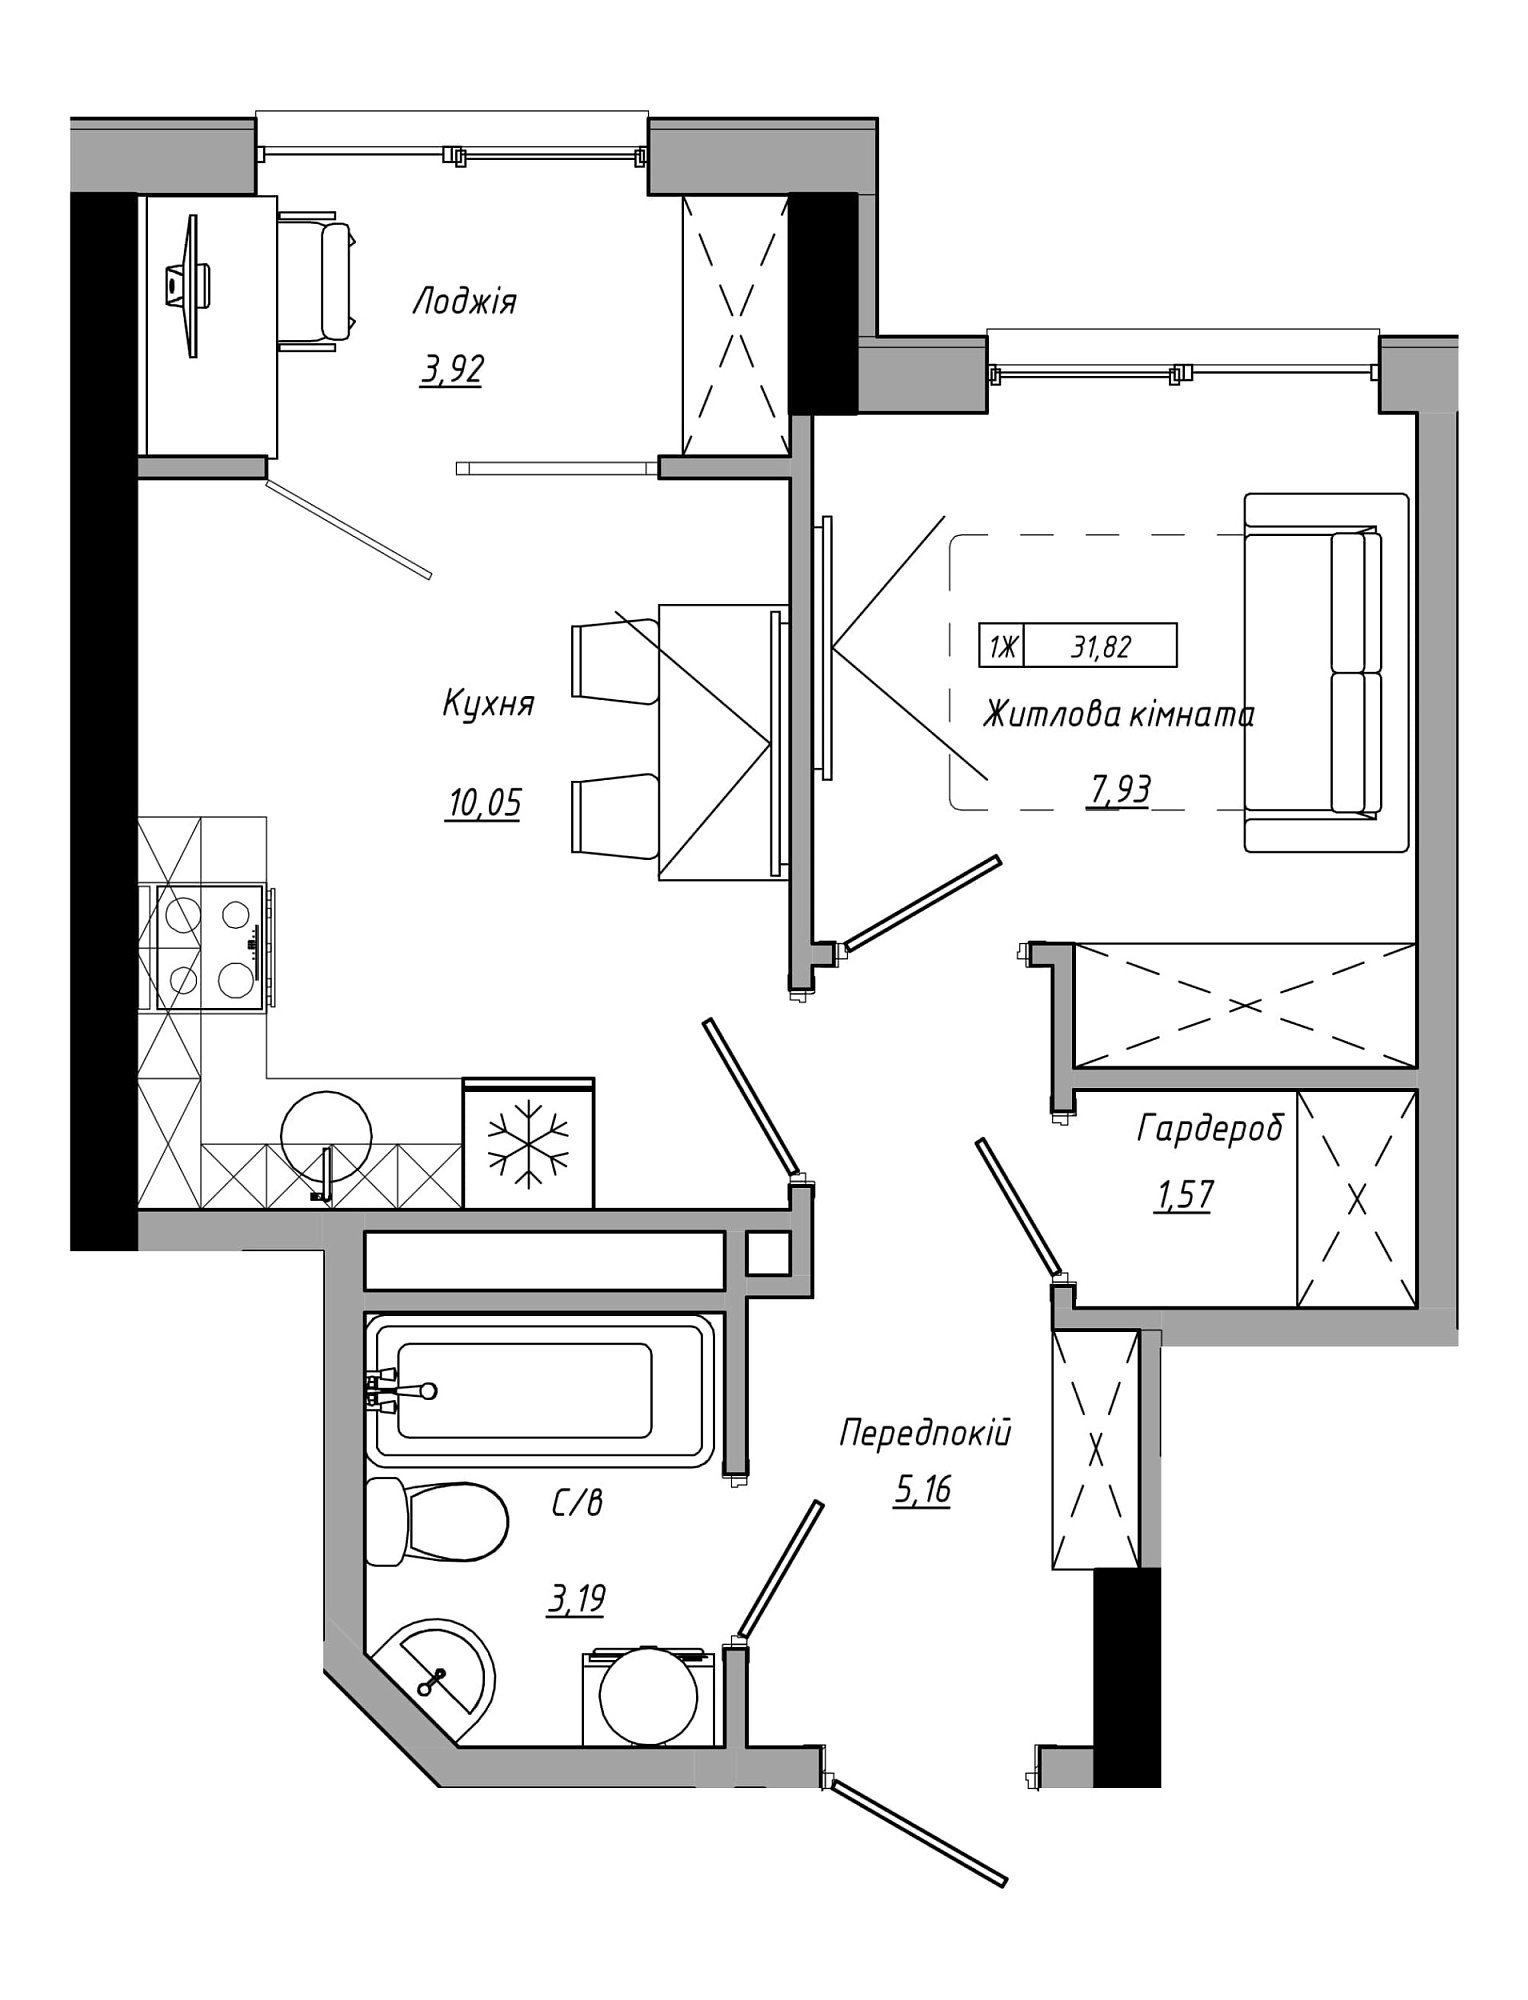 Планування 1-к квартира площею 31.82м2, AB-21-14/00110.